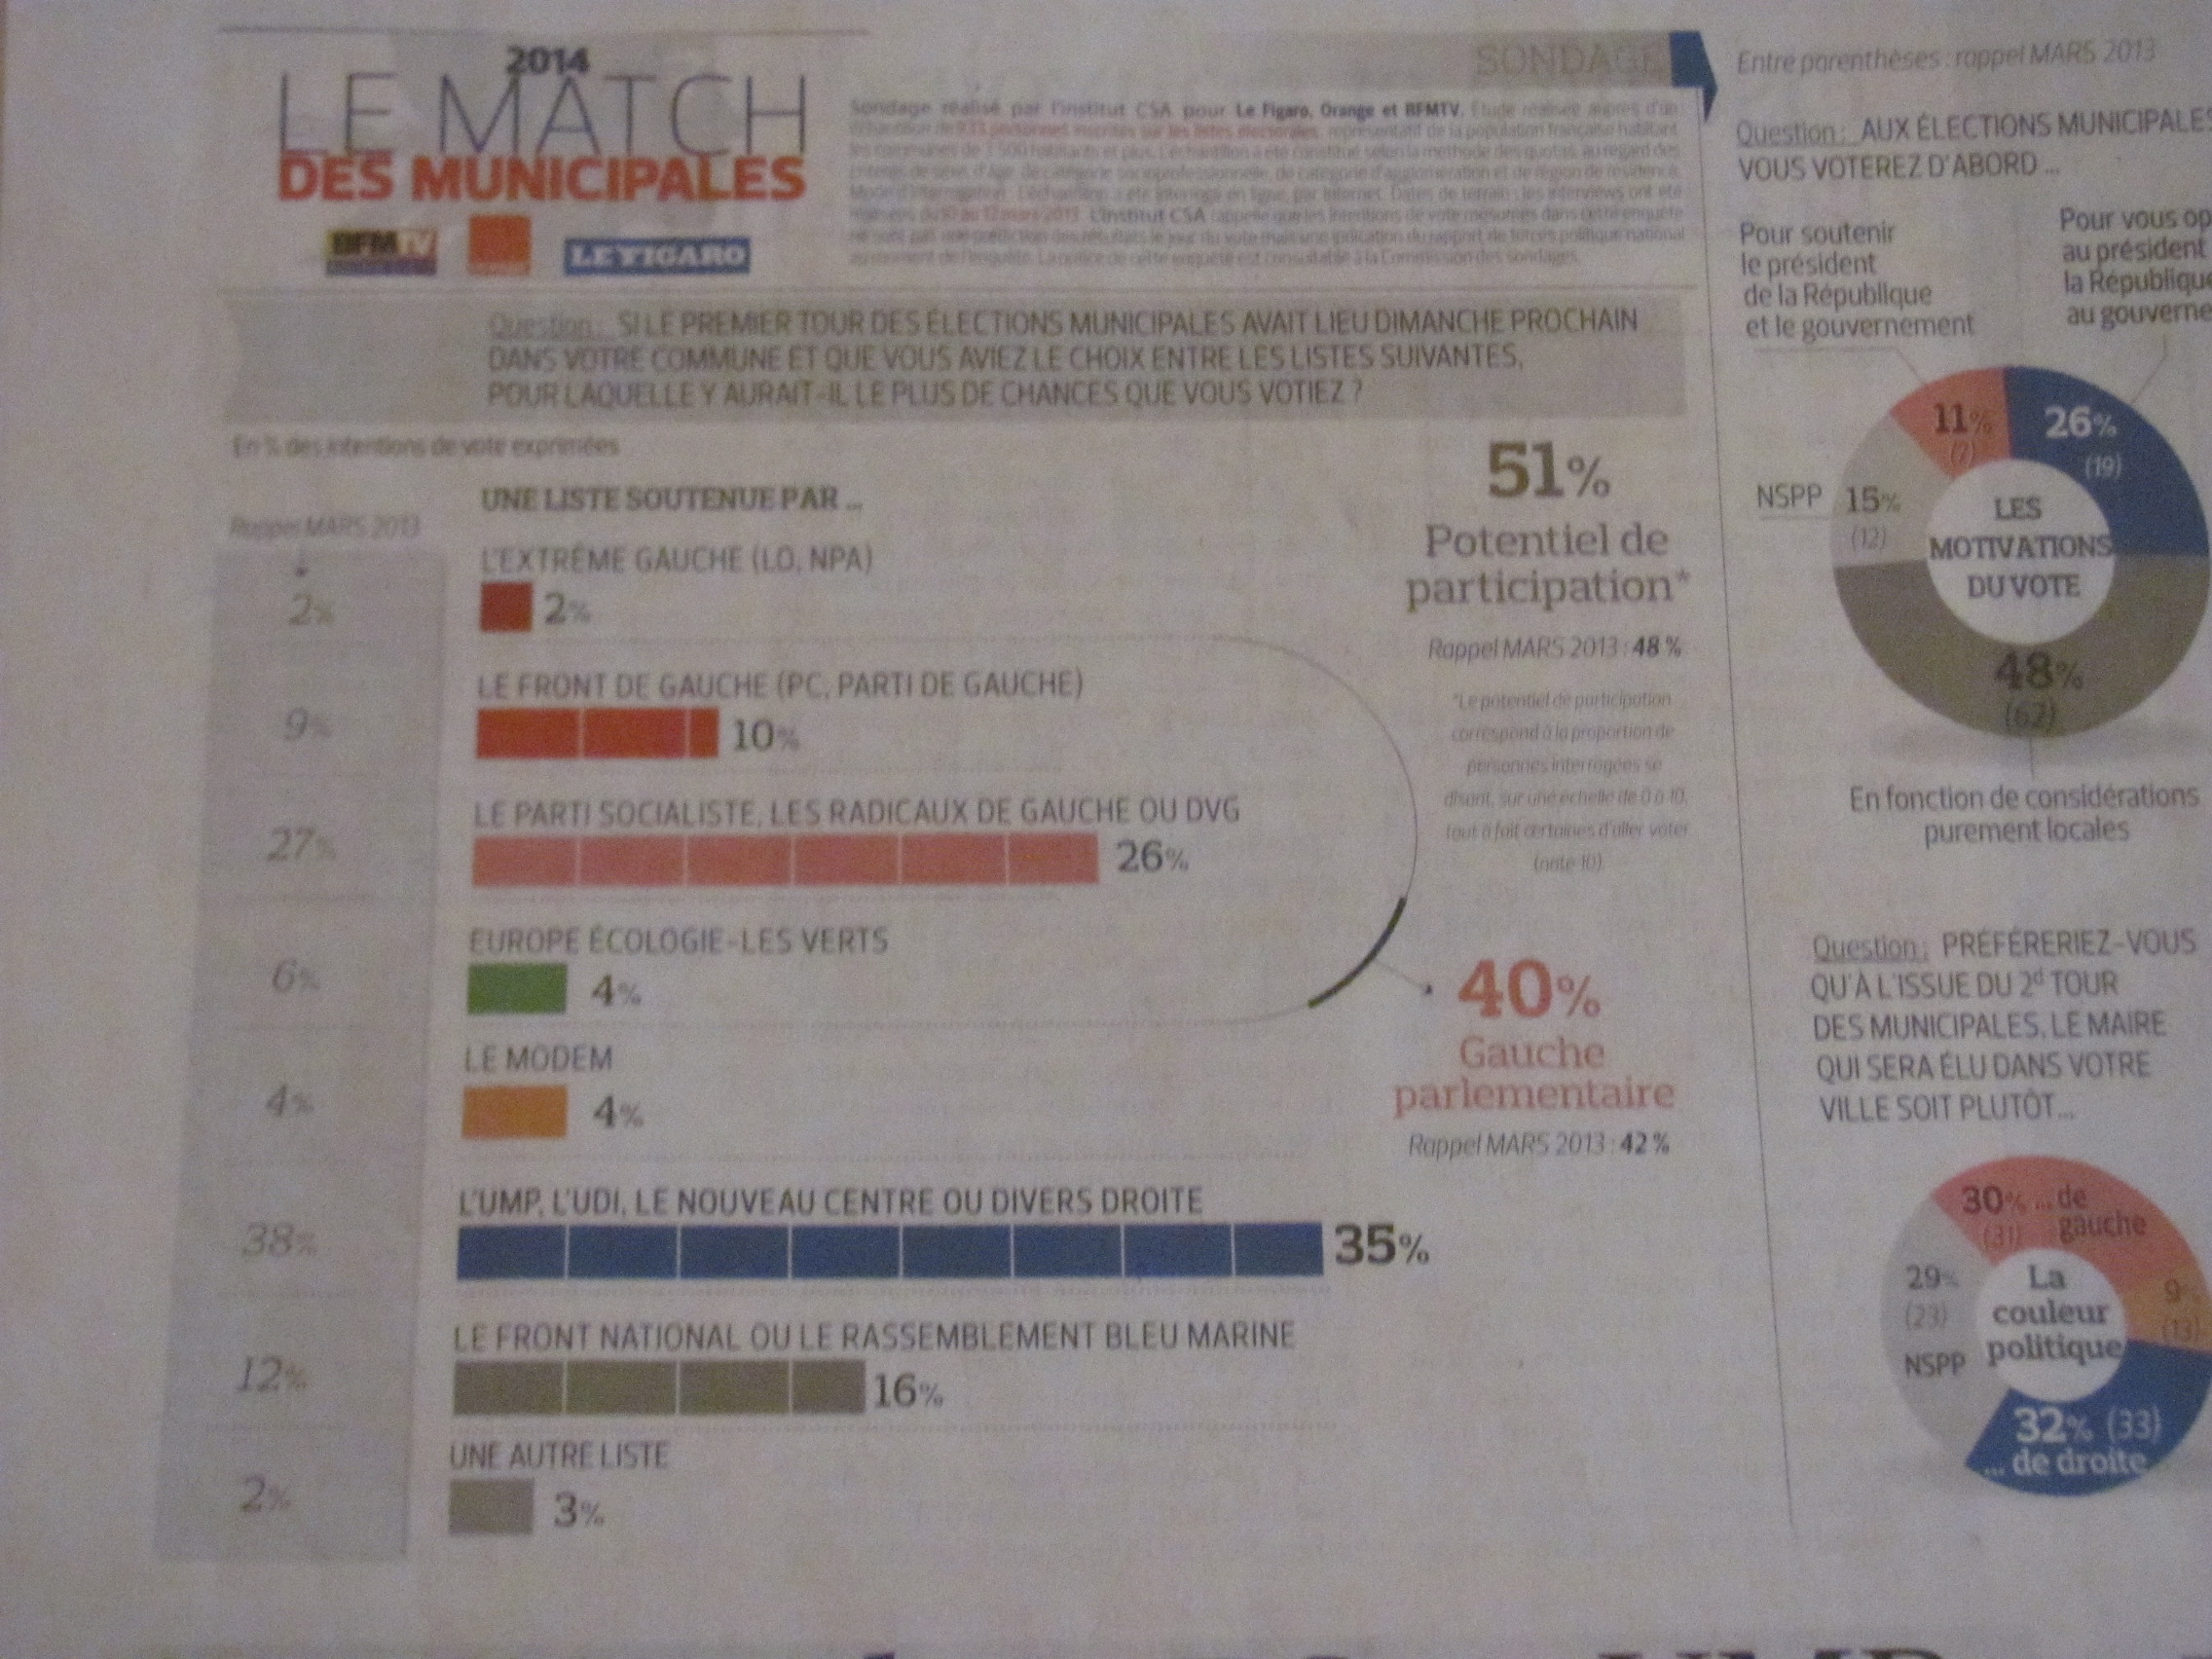 (1) Municipales : Le nouveau sondage du Figaro donne 10% au Front de Gauche pour les Municipales !